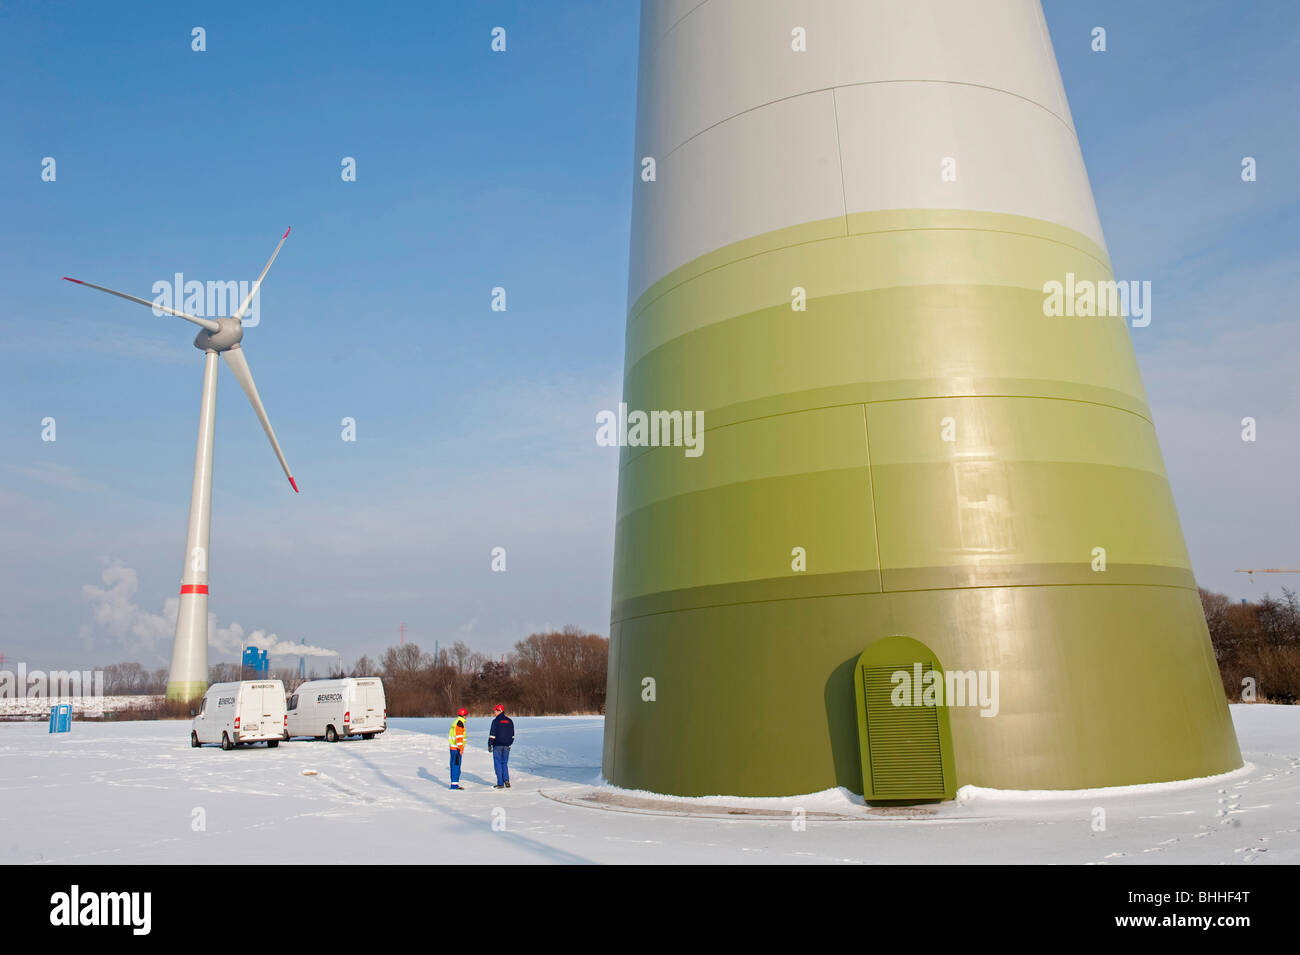 Allemagne Hamburg - éoliennes Enercon E-126 avec 6 MW dans le port pendant la saison d'hiver, l'équipe de service au travail Banque D'Images